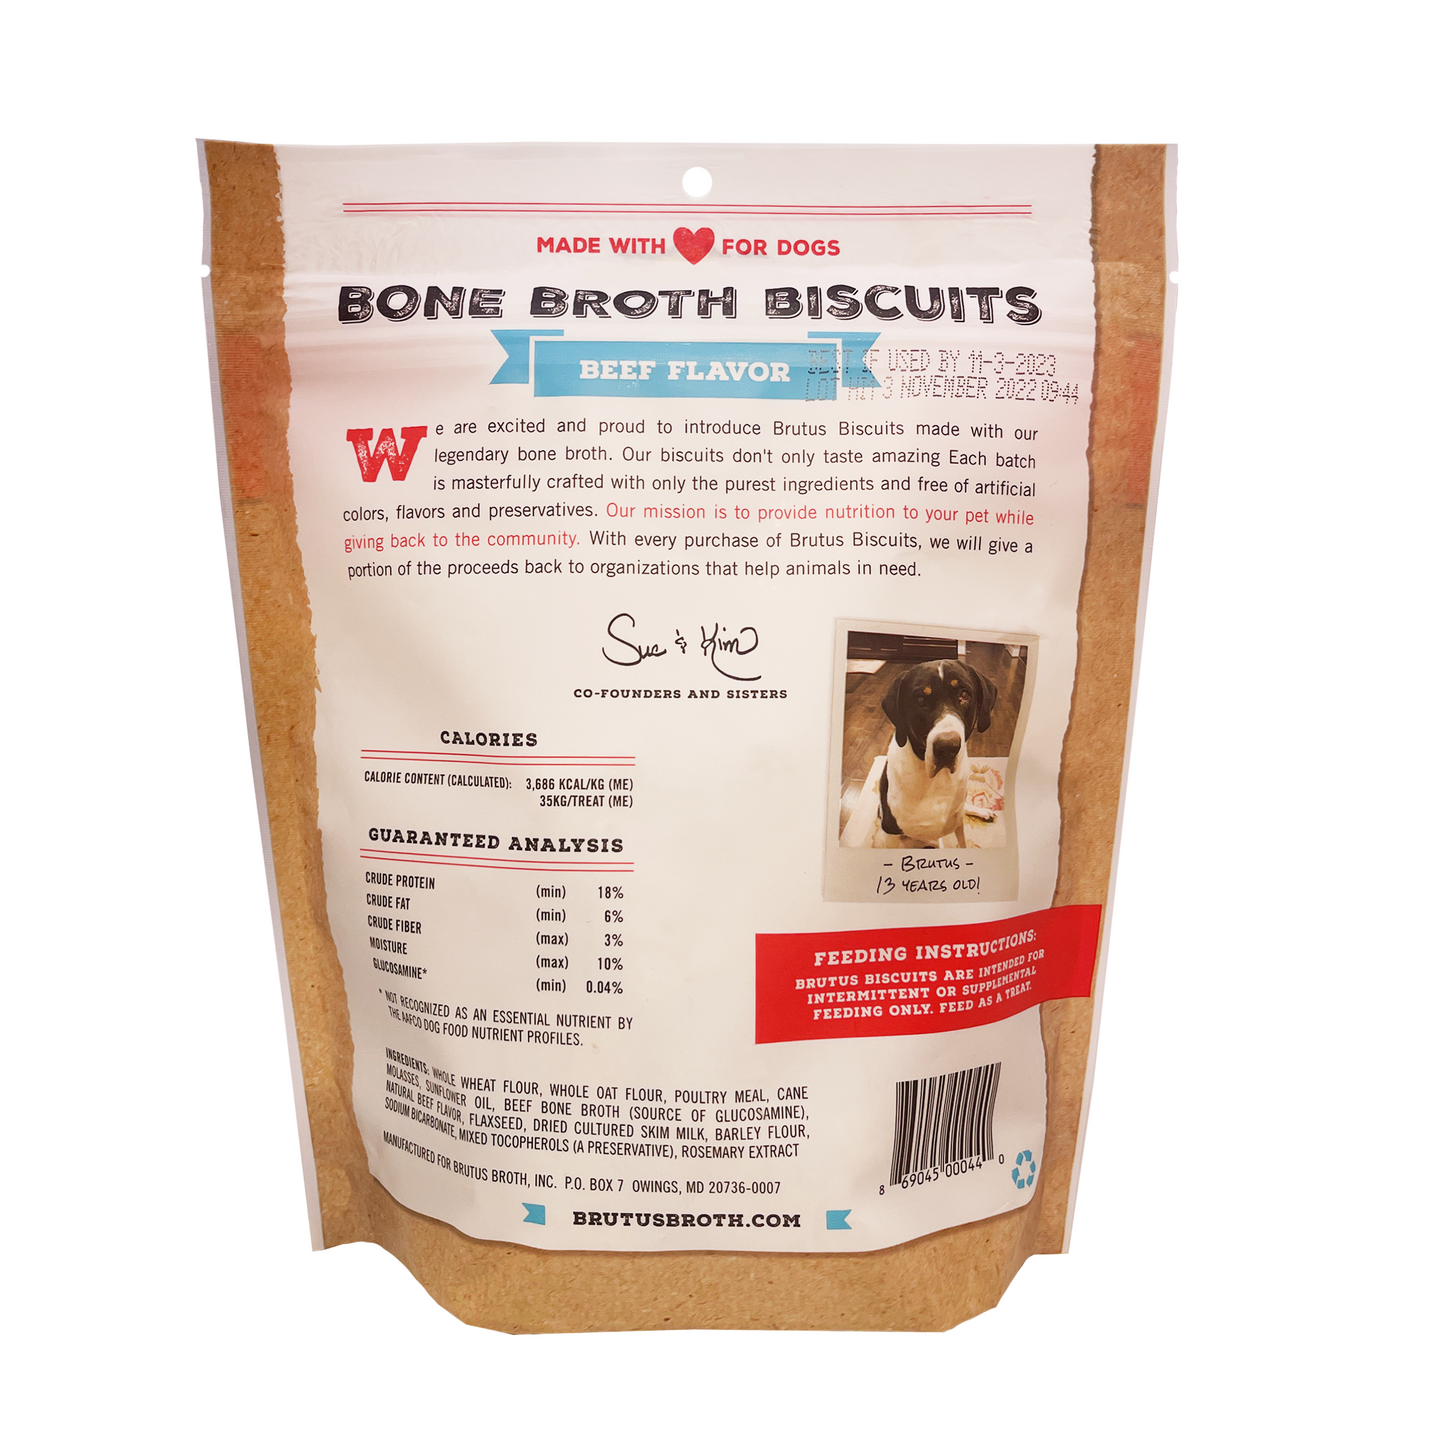 Wholesale Brutus Bone Broth Biscuits - Beef